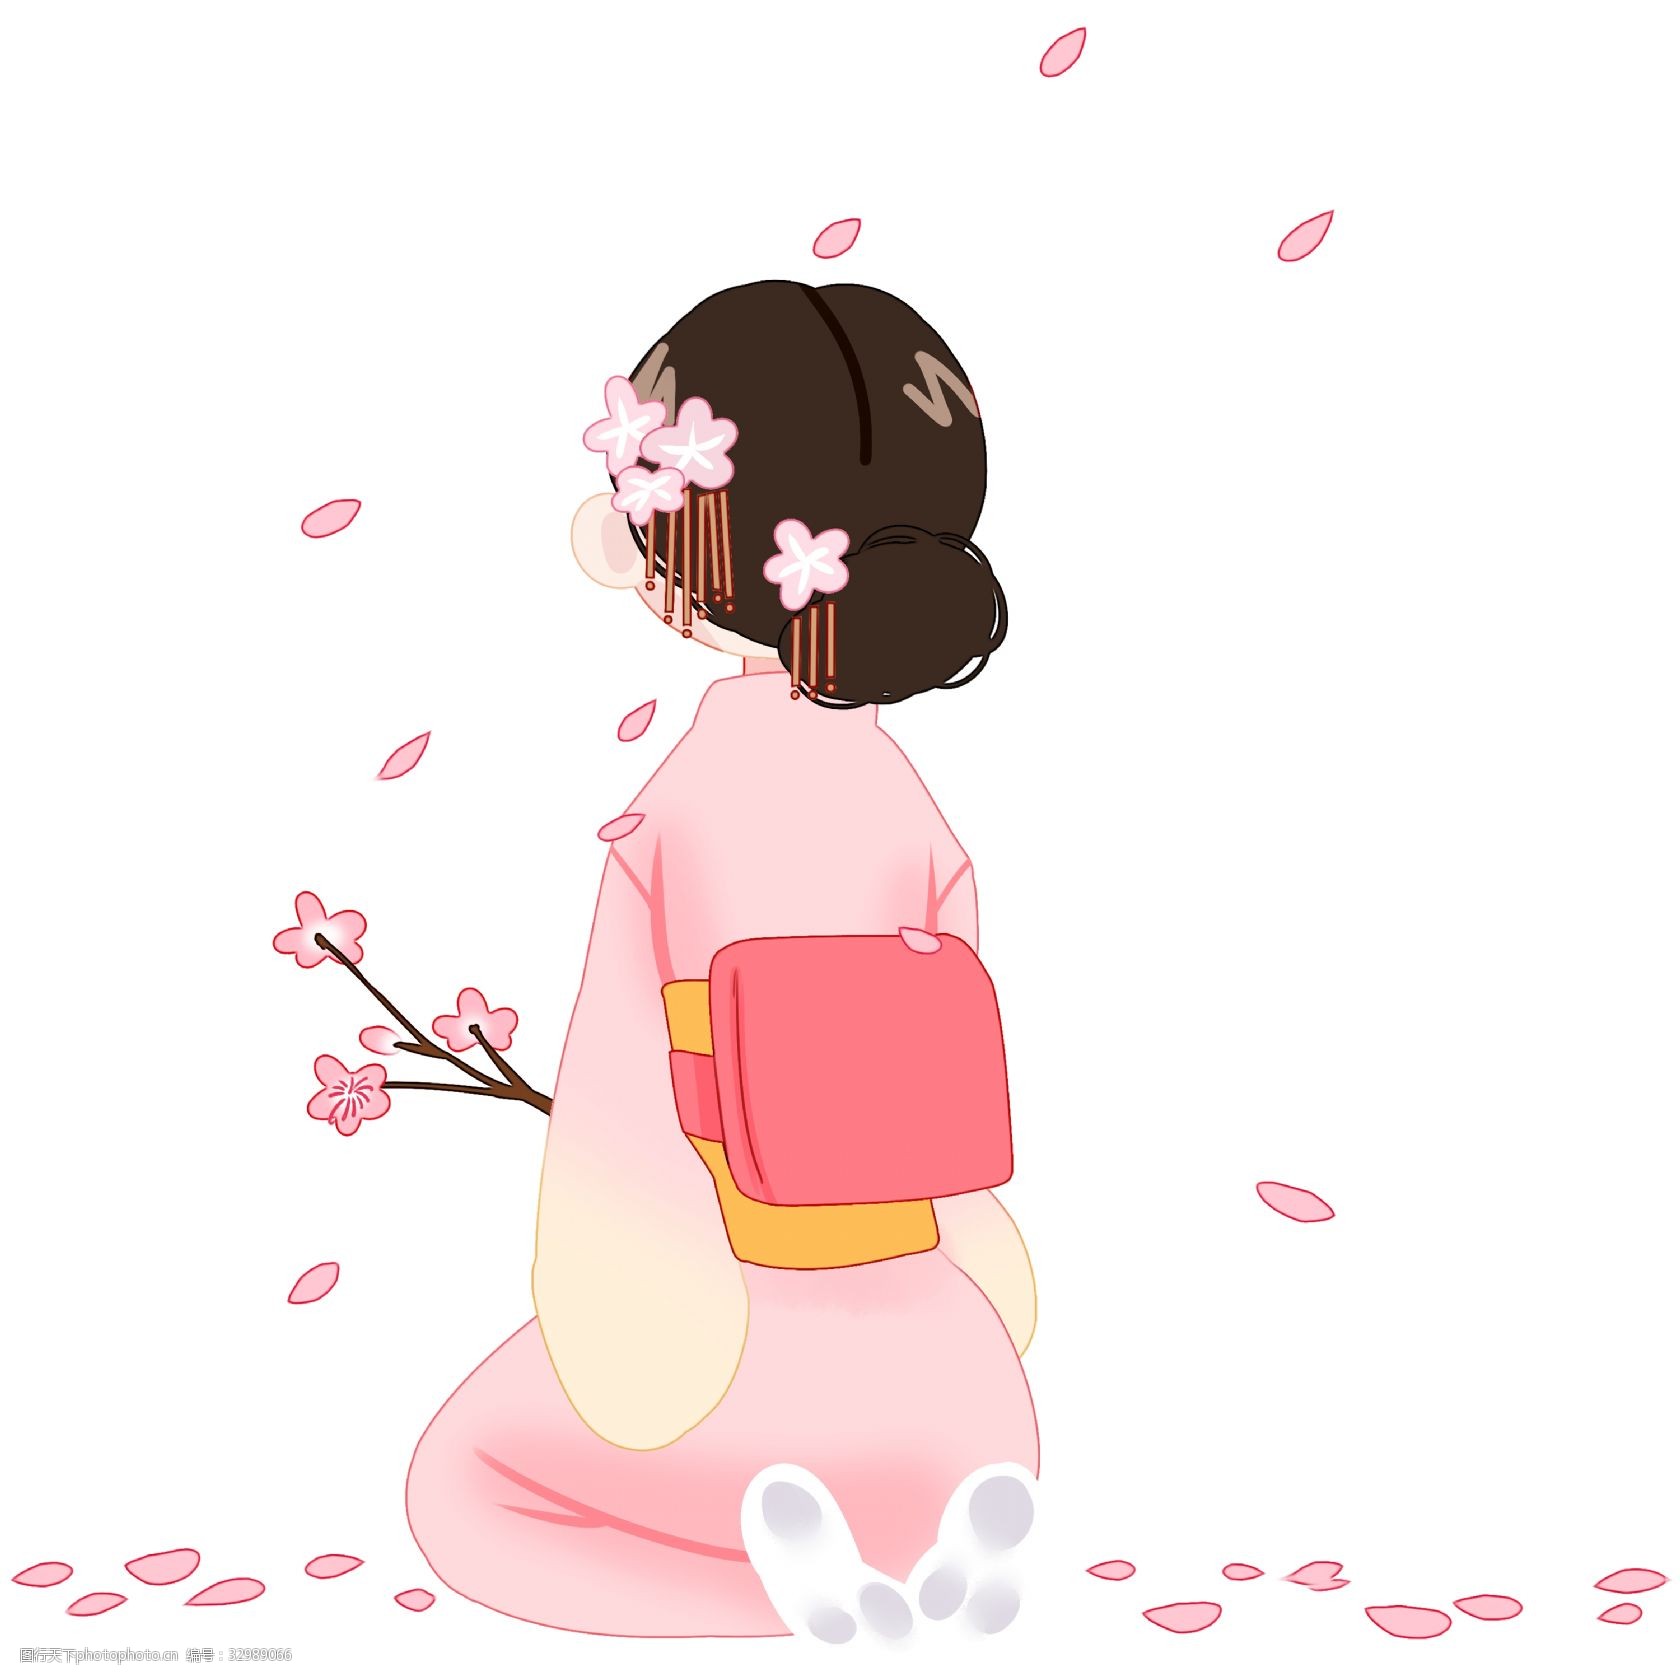 关键词:拿着樱花的小女孩 漂亮的小女孩 日本女孩 粉色的樱花 卡通的